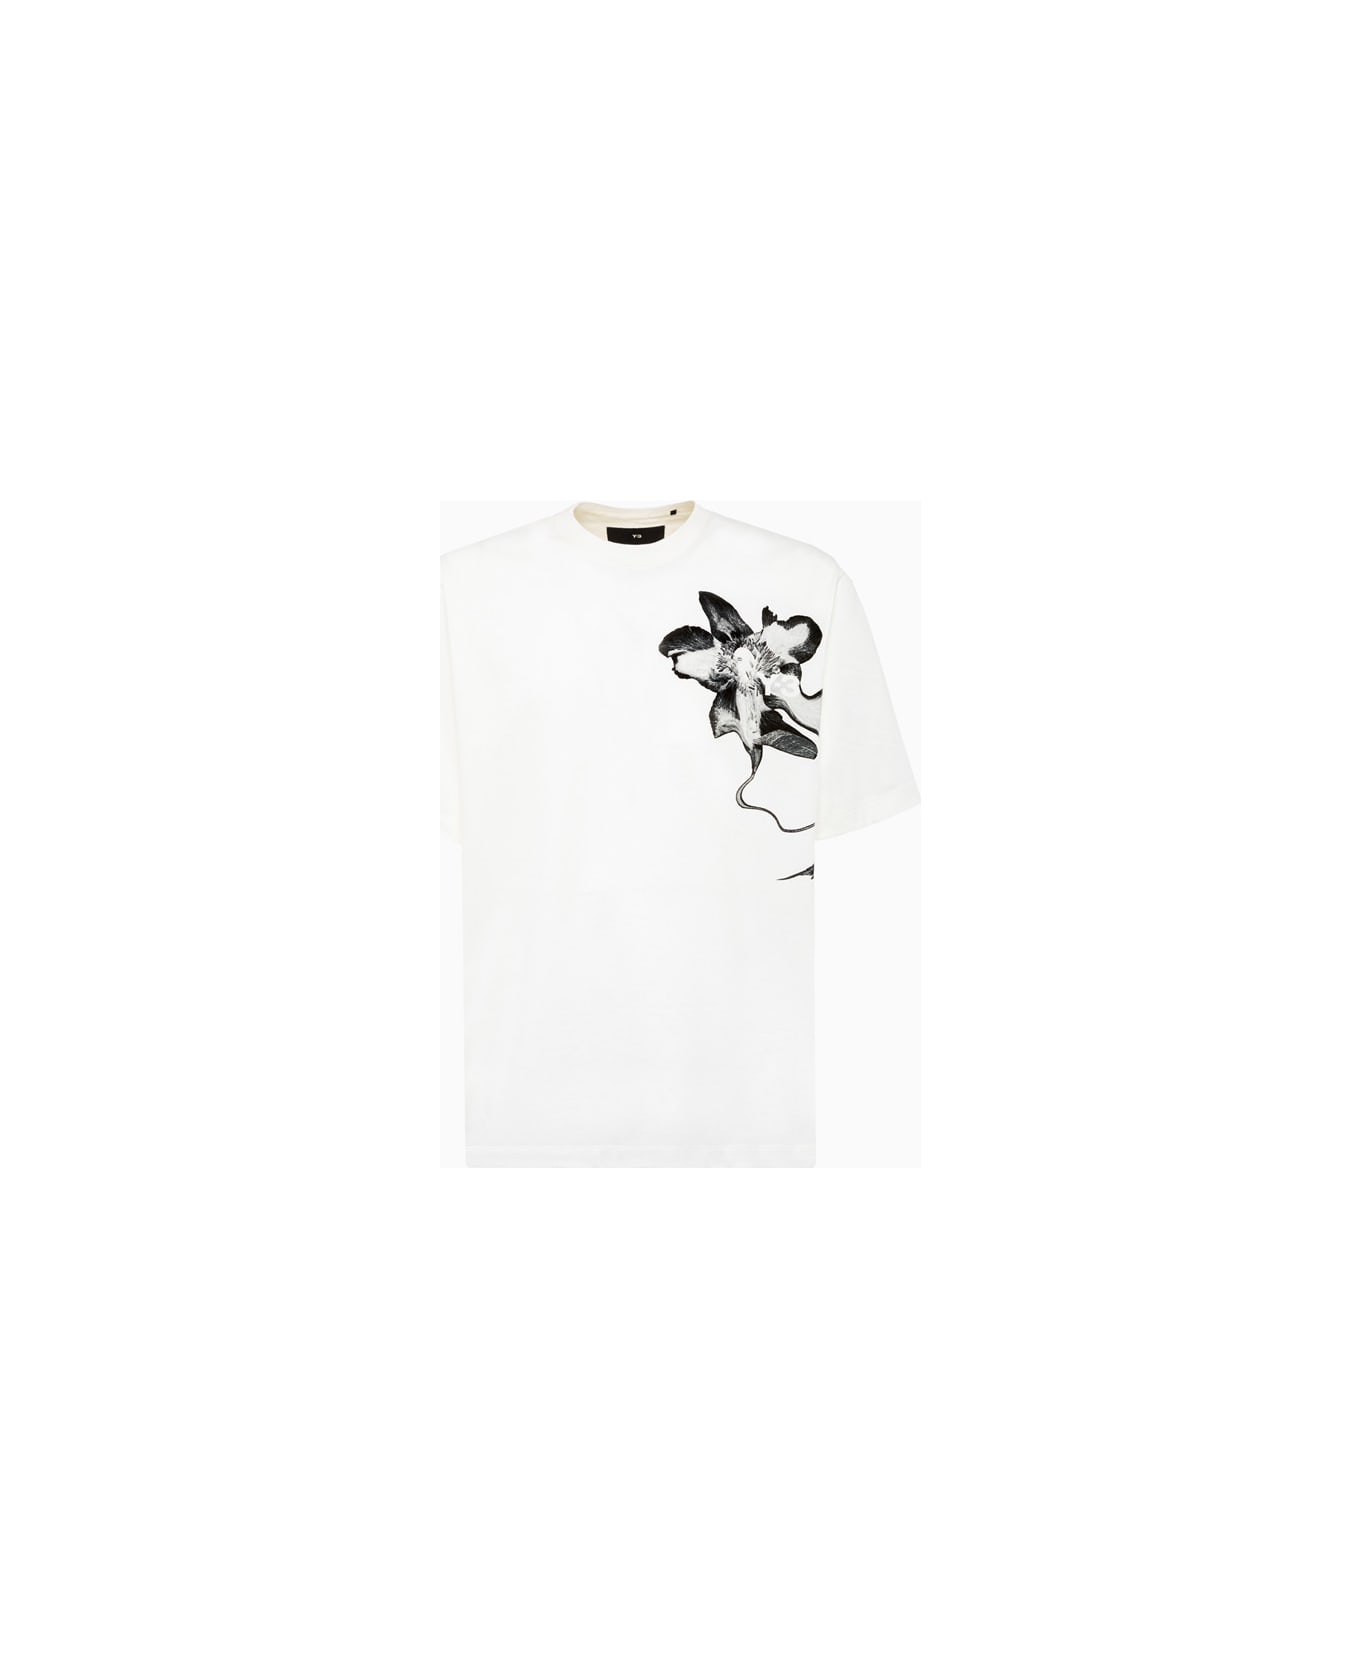 Y-3 Adidas Y-3 T-shirt Iv7737 - White